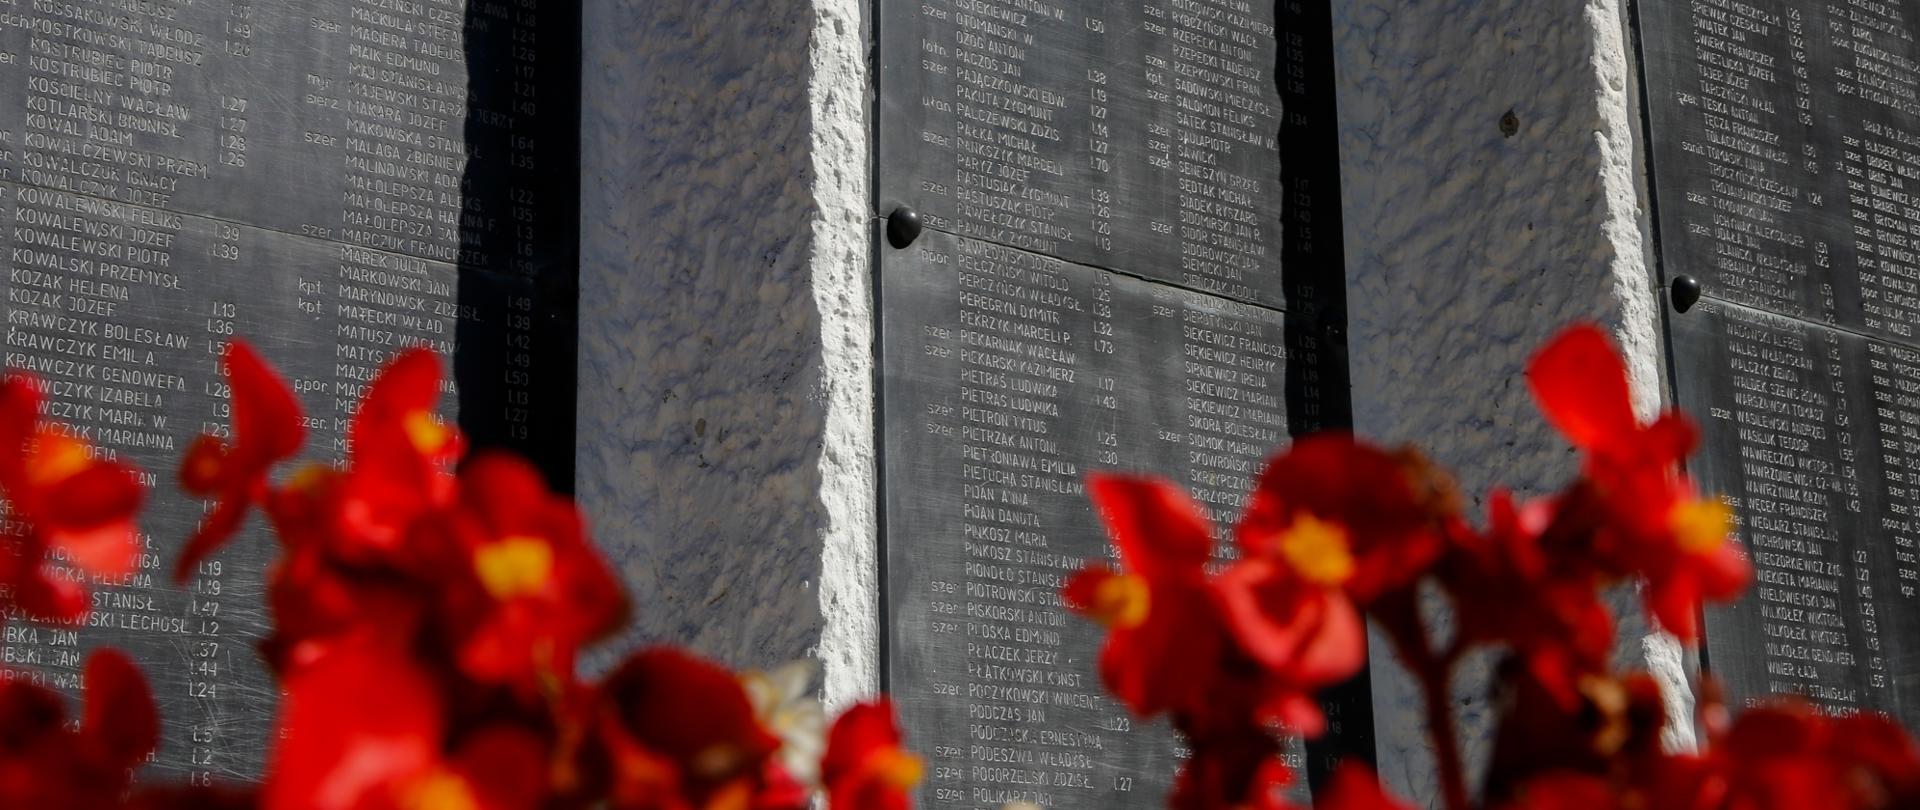 Tablice pomnika z nazwiskami osób zamordowanych. Na pierwszym planie kwiatki.